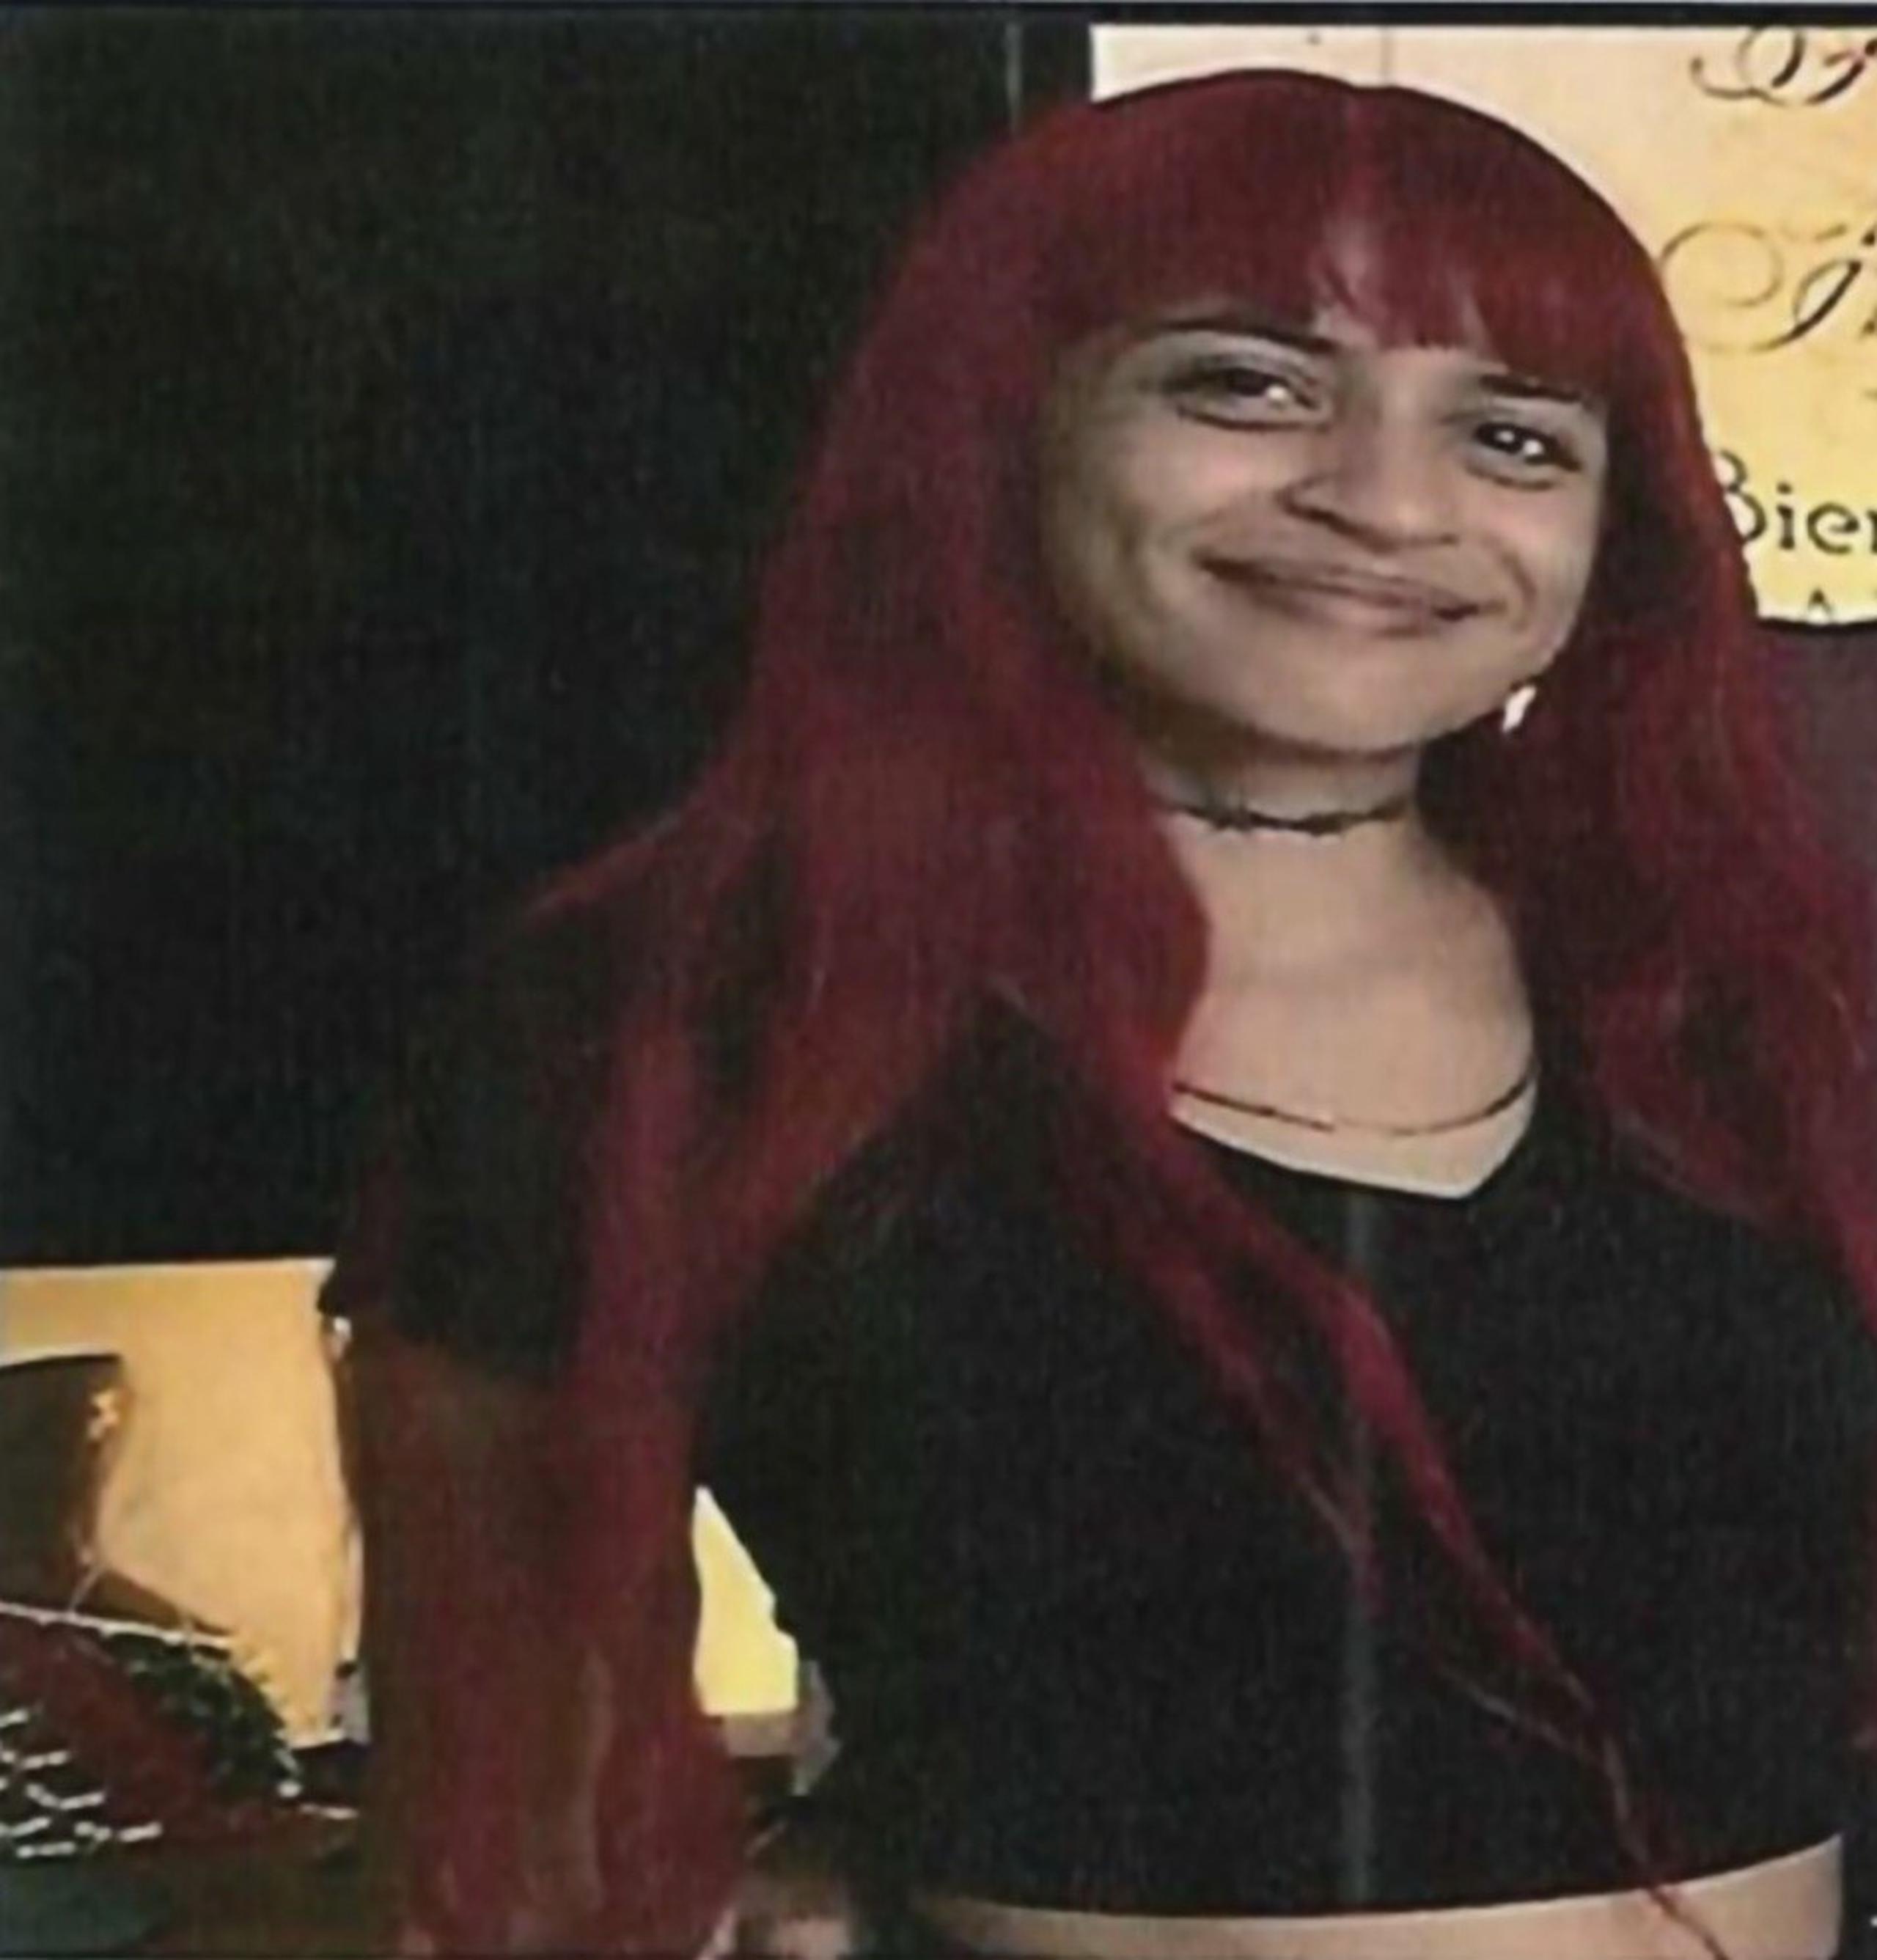 Ramsell Alamo, la última persona que compartió con Mariela Crystal Seda Ocasio previo a su desaparición el 12 de abril, condujo a las autoridades al lugar donde se hallaron los restos humanos.